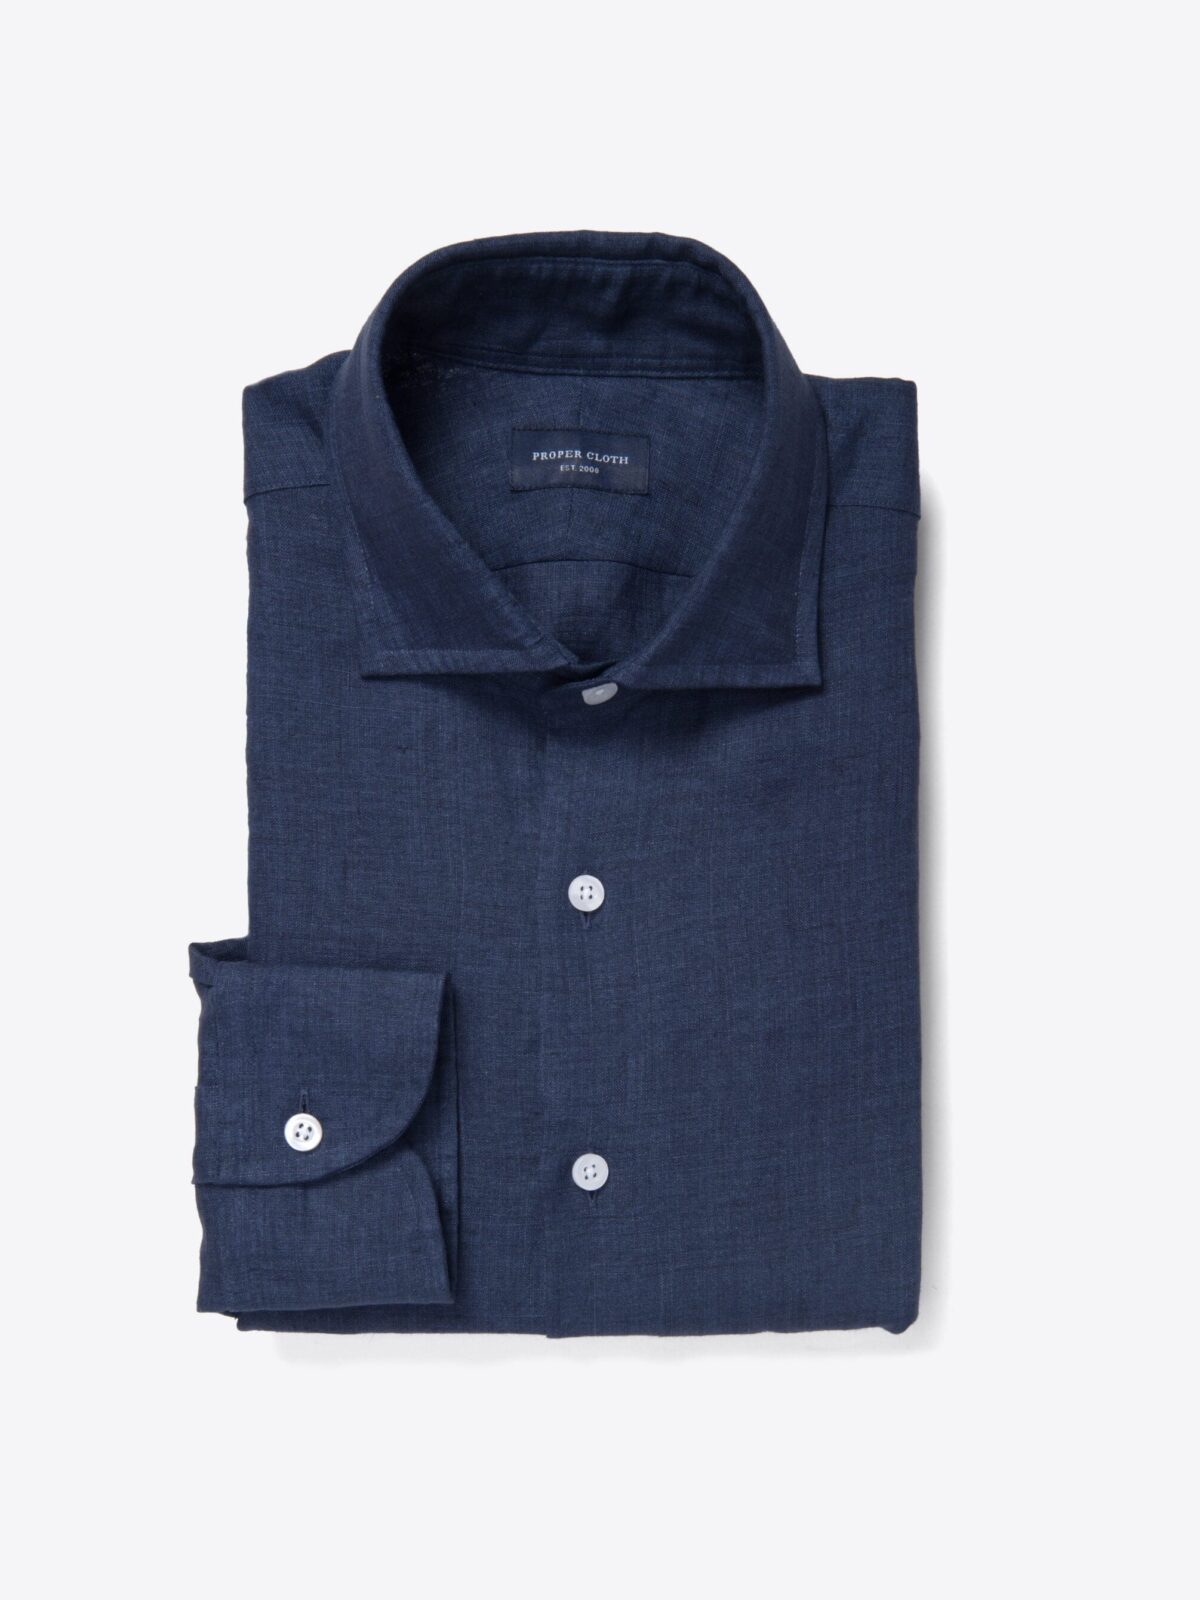 Portuguese Blue Stripe Seersucker Shirt by Proper Cloth